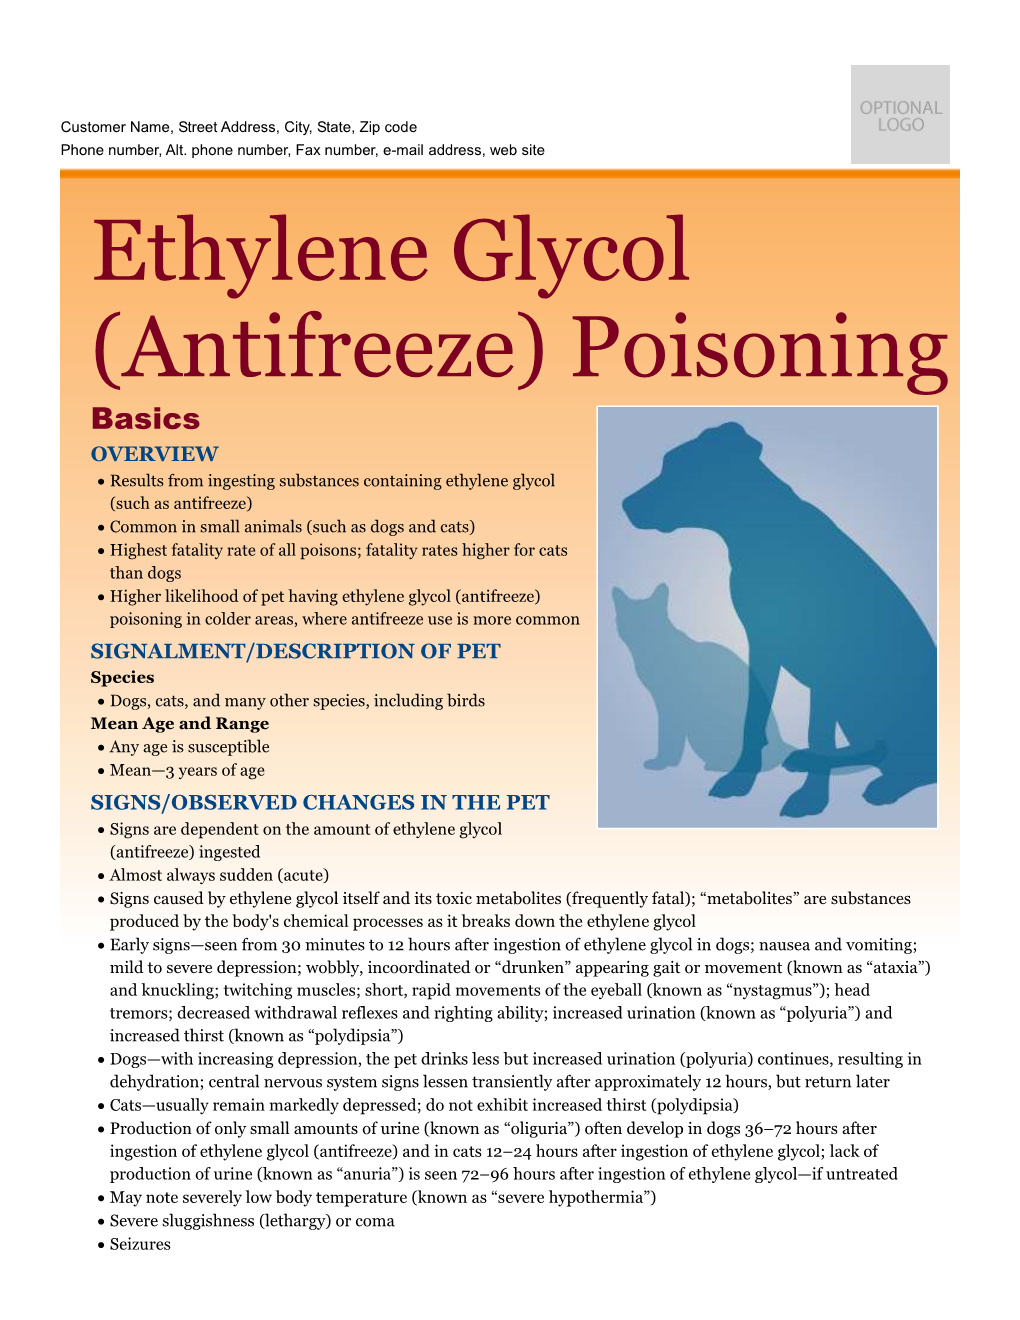 Ethylene Glycol (Antifreeze) Poisoning